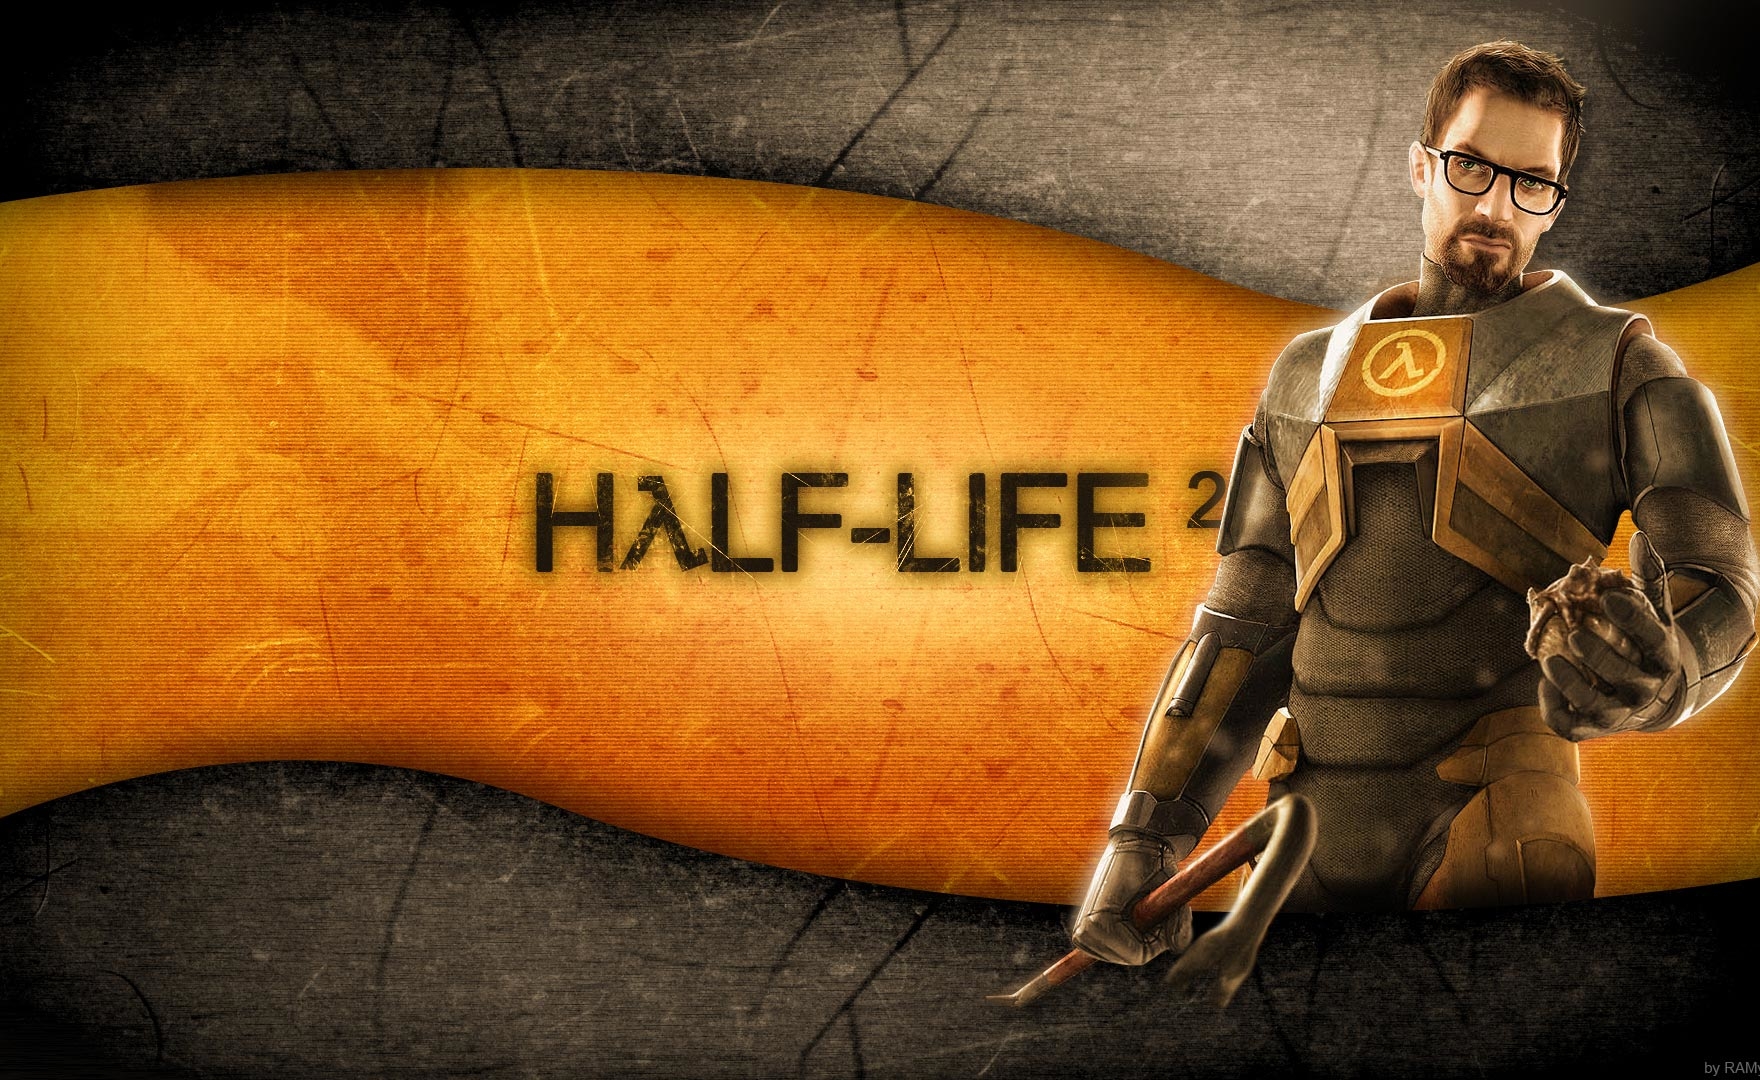 Half-Life 2, dopo molti anni, riceve un nuovo aggiornamento ufficiale